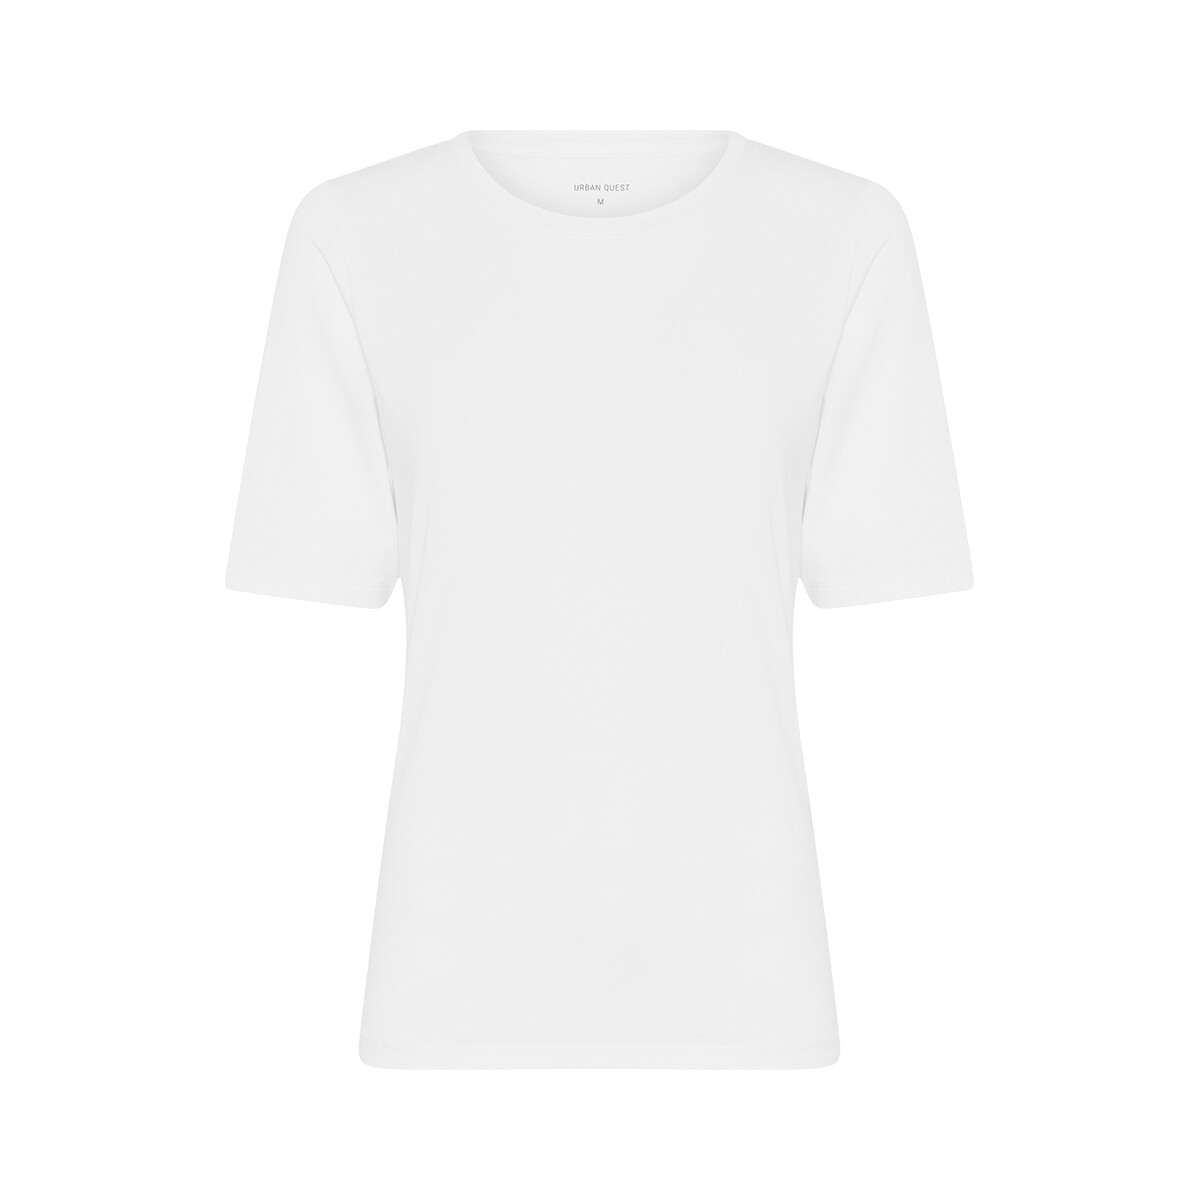 Se Urban Quest Bamboo Slim Fit T-shirt, Farve: Hvid, Størrelse: XS, Dame hos Netlingeri.dk